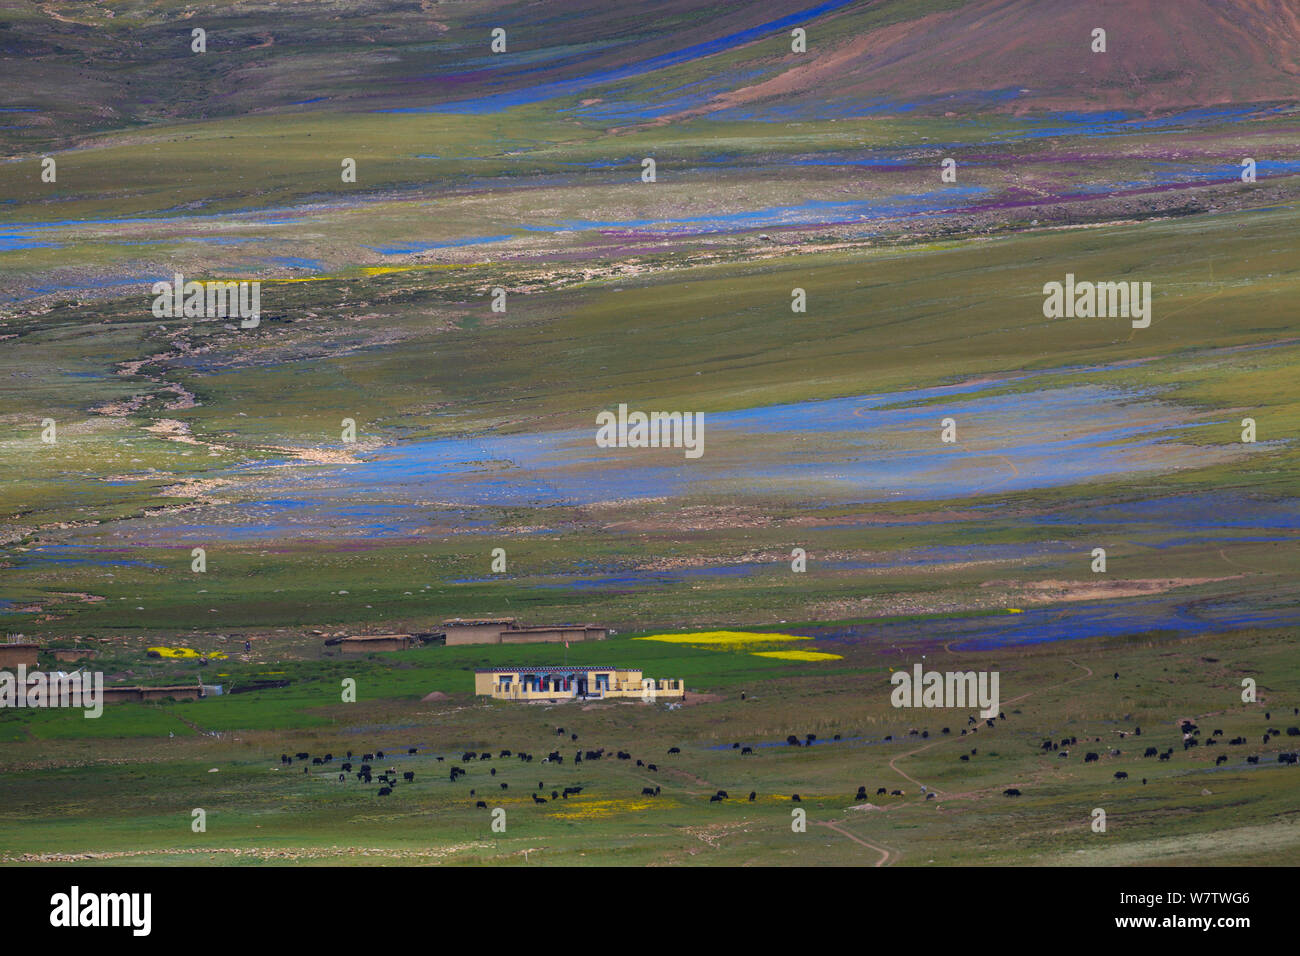 Paesaggio di plateau in alta altitudine altopiano, con colori luminosi e da diverse piante, Shiqu County, nella provincia di Sichuan, in Cina, Agosto 2010. Foto Stock